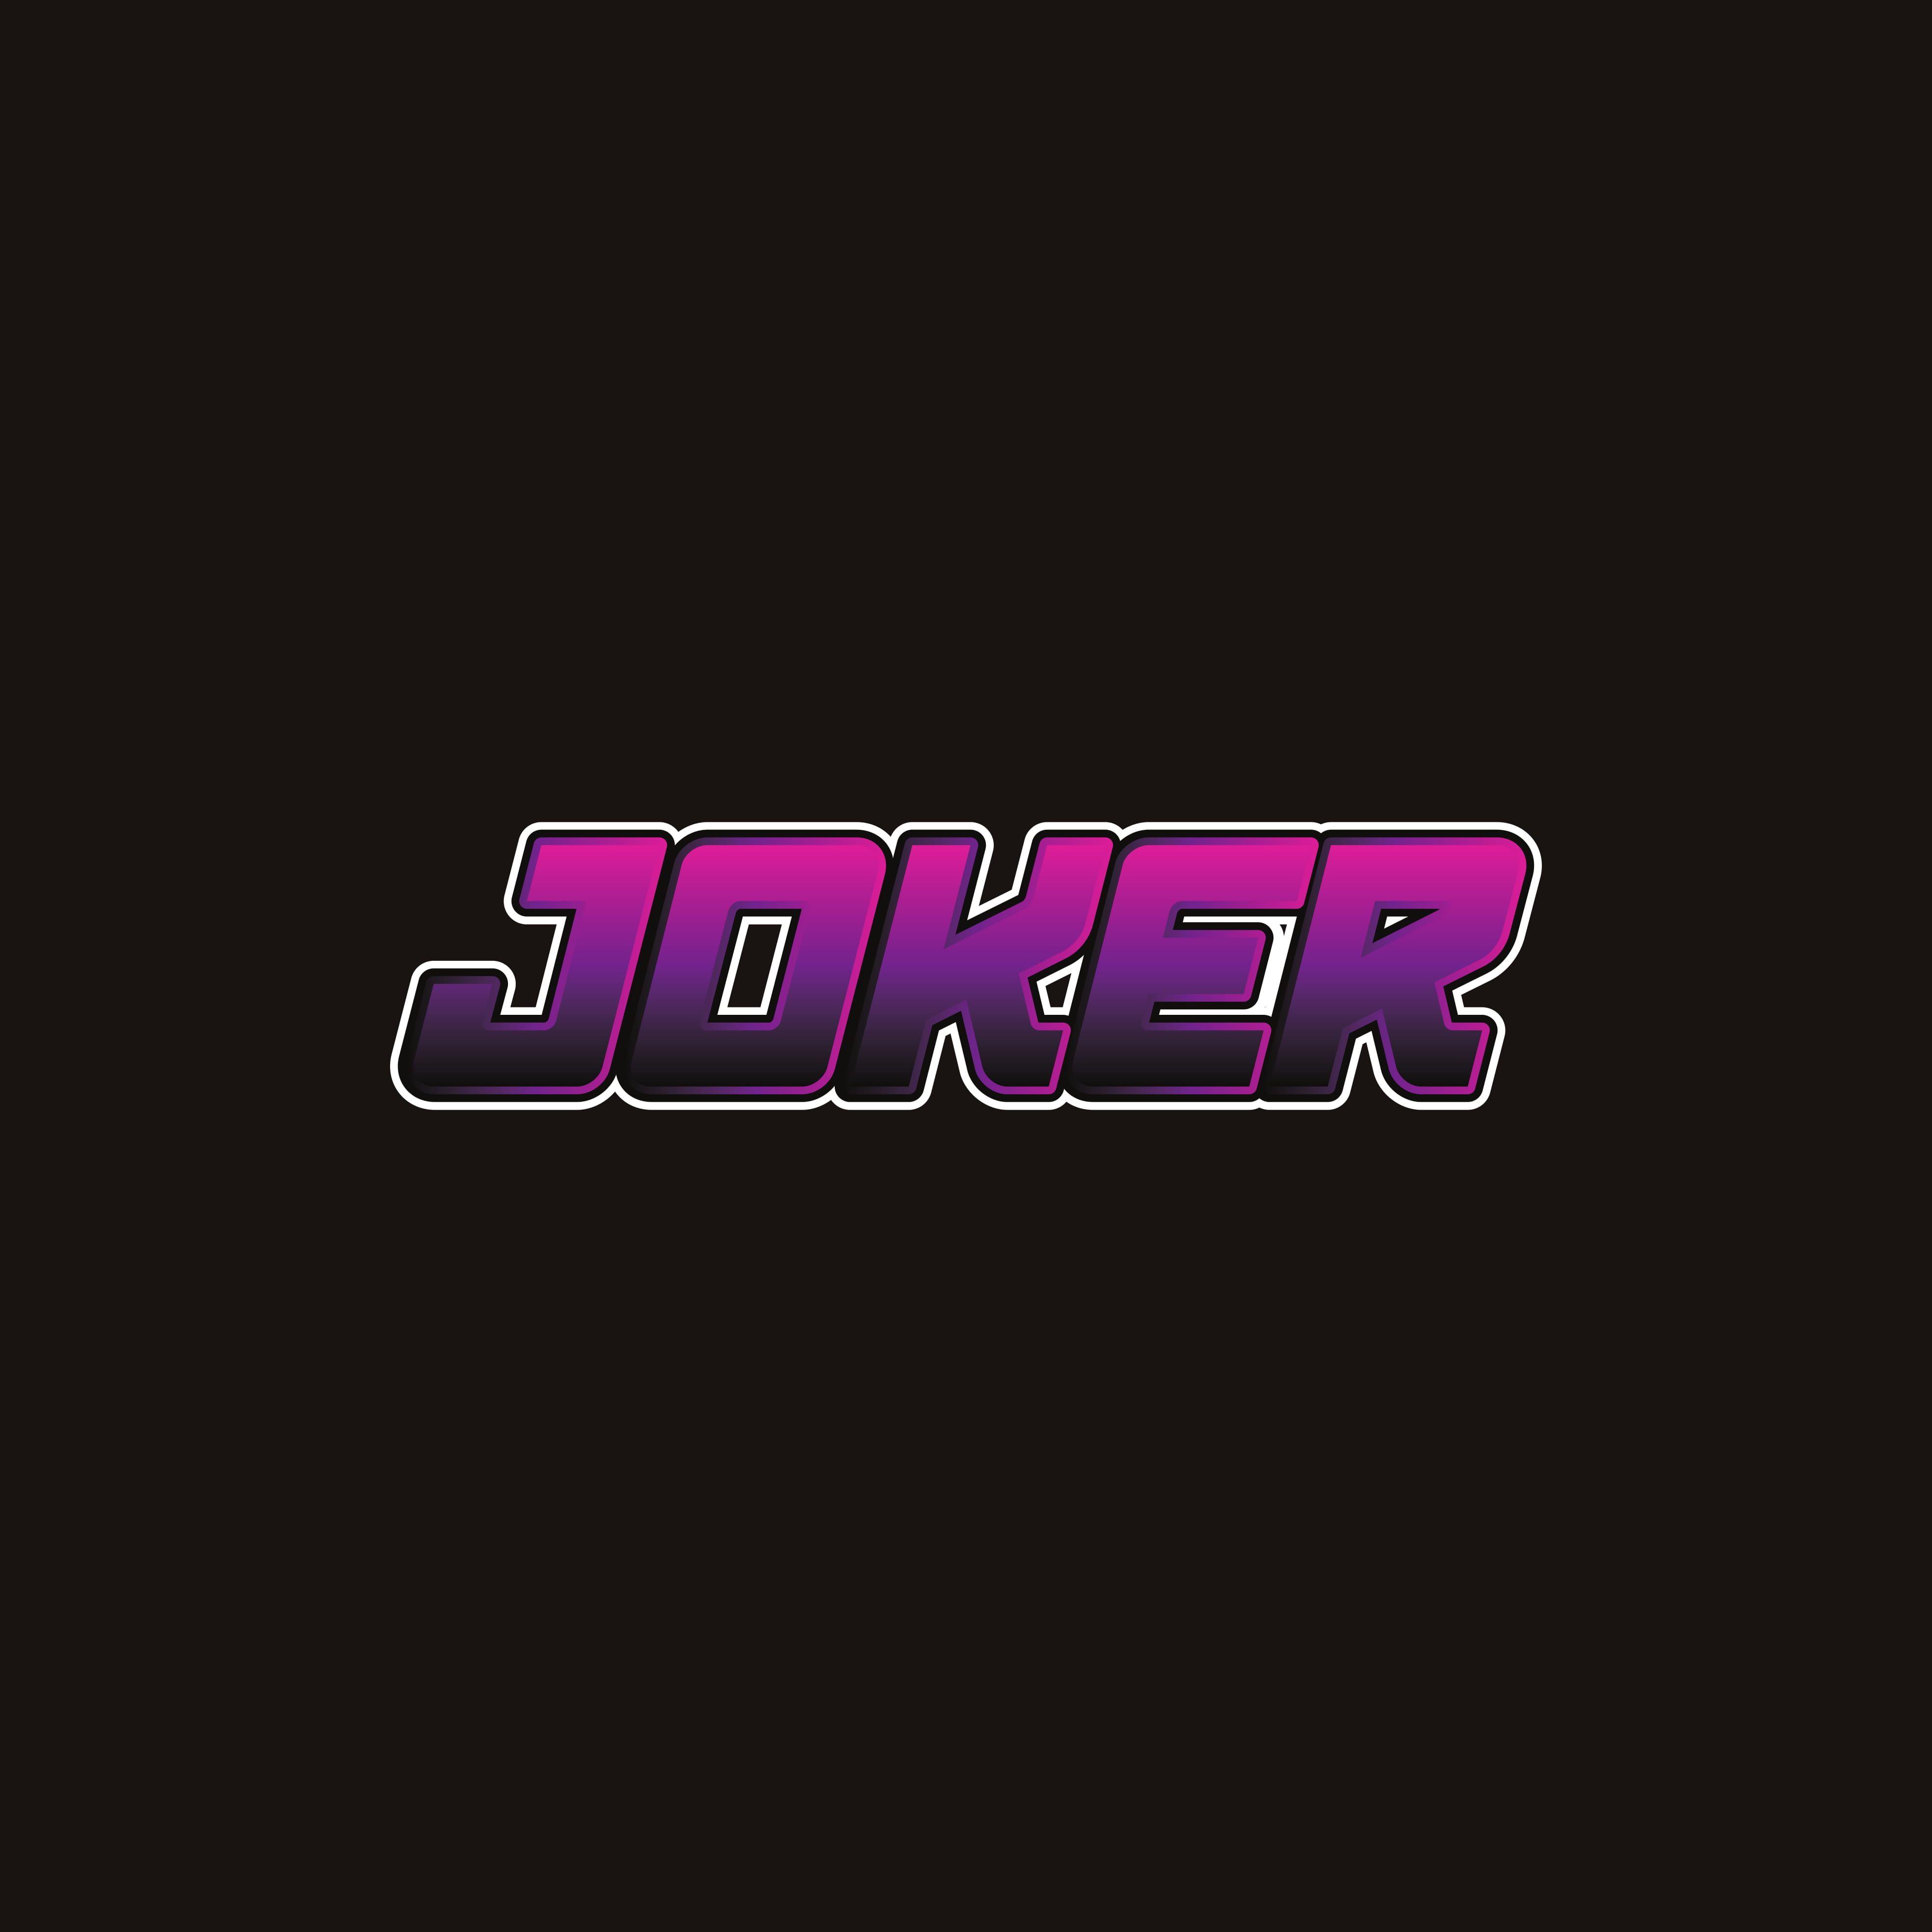 3937x3937 Joker Logo 4k, Siêu anh hùng HD, Hình nền 4k, Hình ảnh